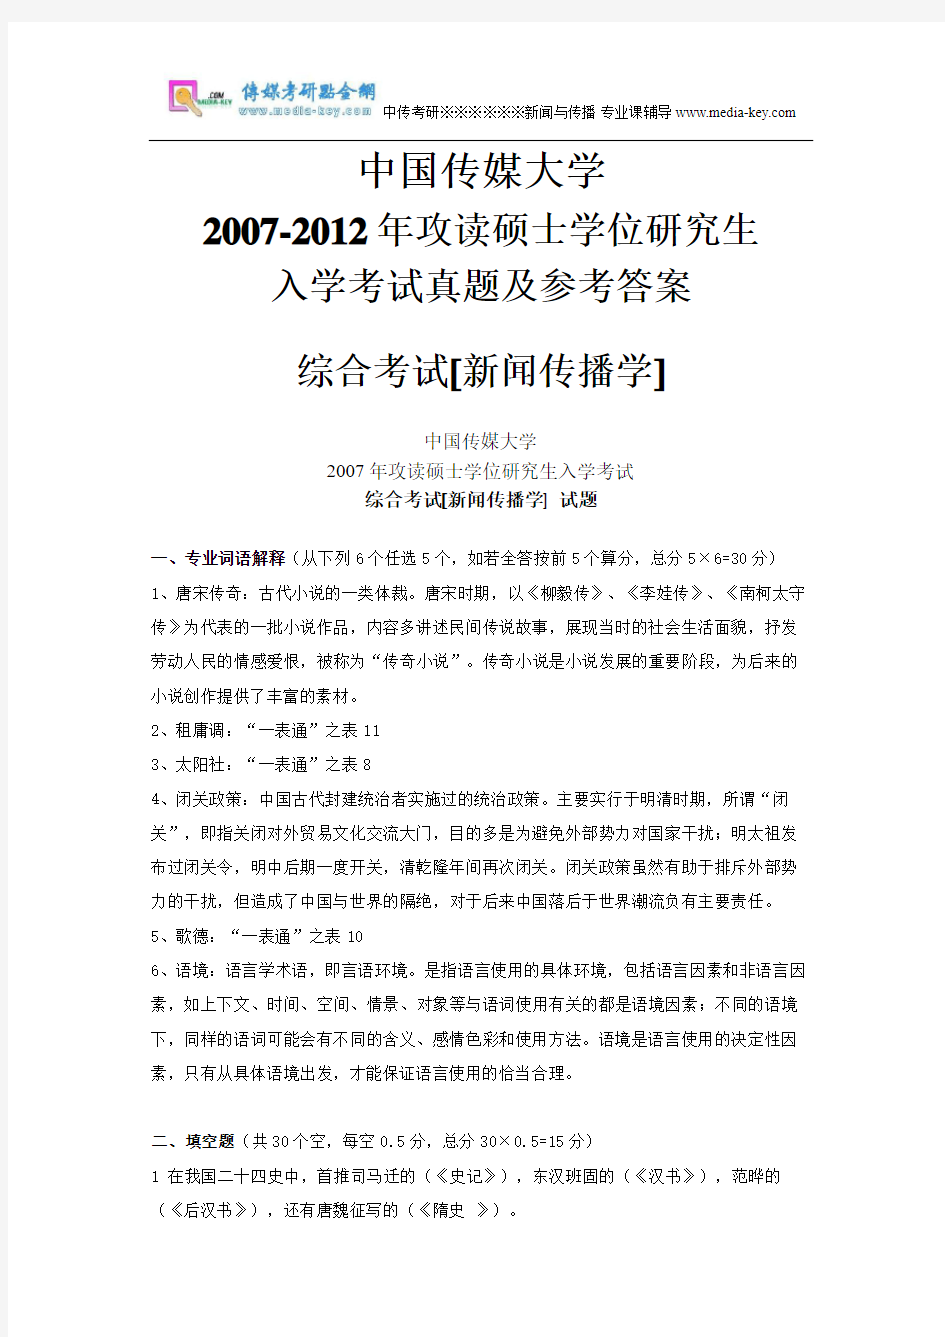 中国传媒大学考研07-12年入学考试真题及参考答案(新闻学)